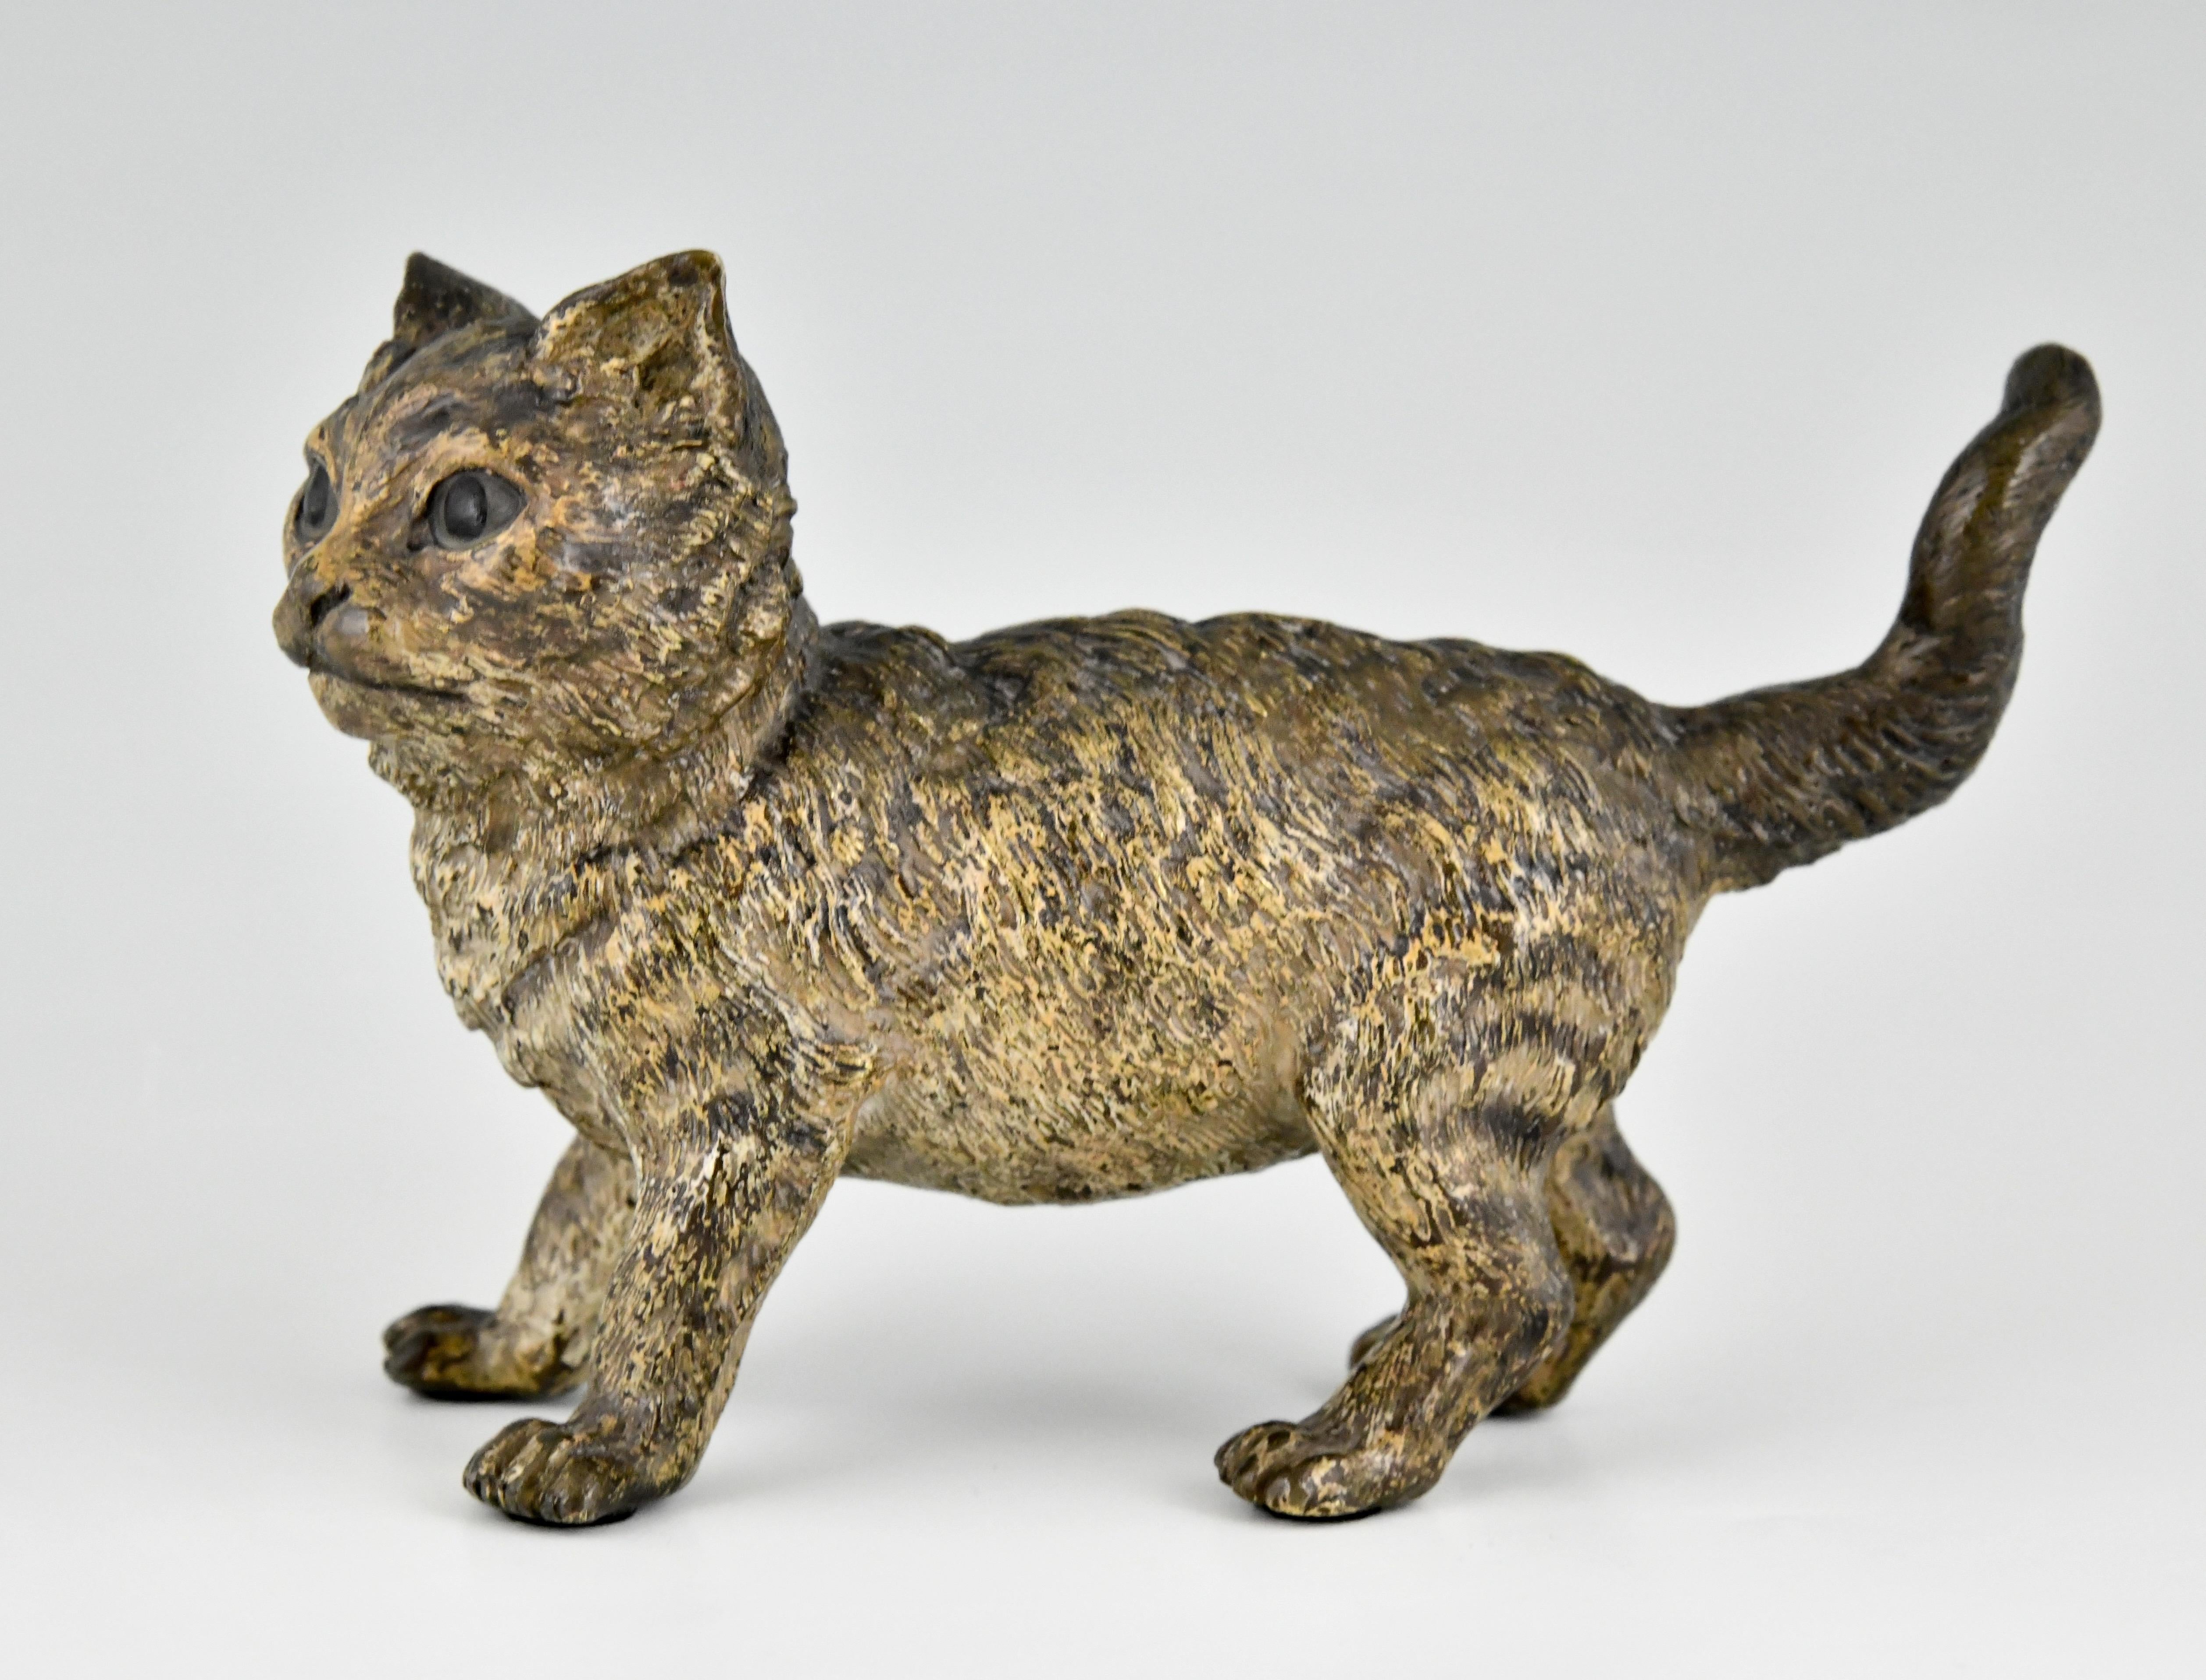 Sculpture ancienne en bronze de Vienne représentant un chat, réalisée par Bergman.
Estampillé FB et Geschutzt. Patine peinte à froid.
Ce modèle est illustré dans 